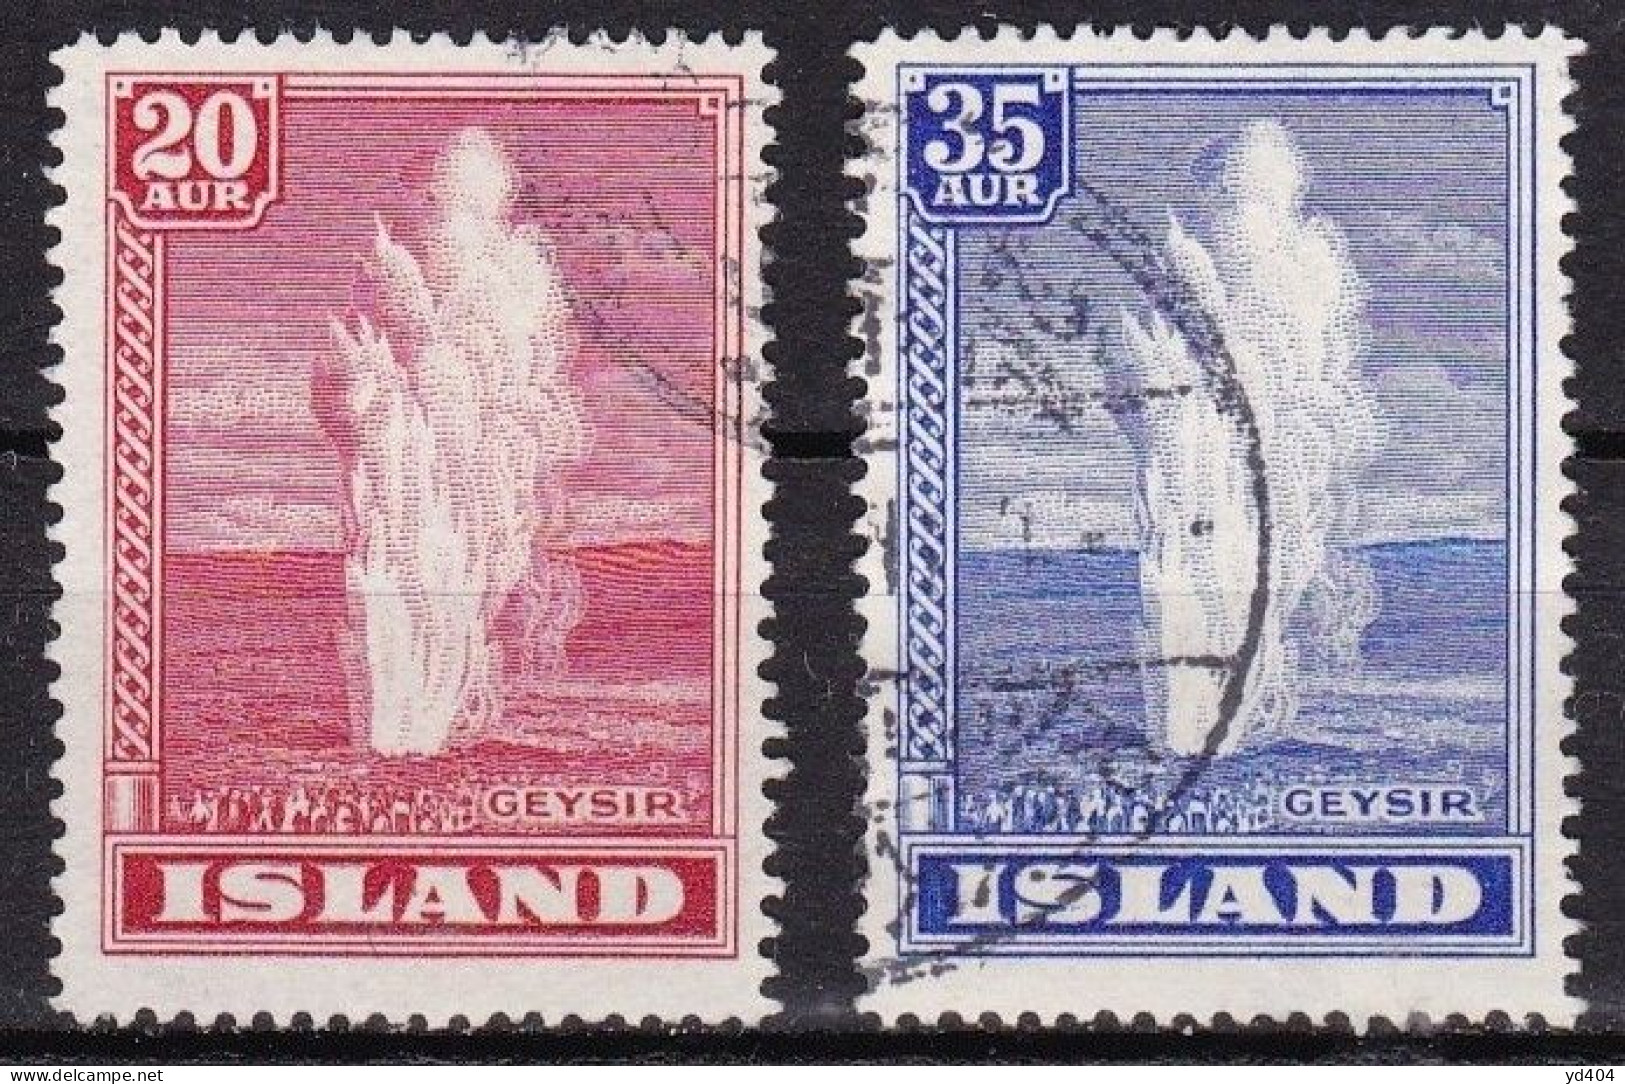 IS036B – ISLANDE – ICELAND – 1938 – THE GREAT GEYSER – SG # 225/6 USED - Oblitérés